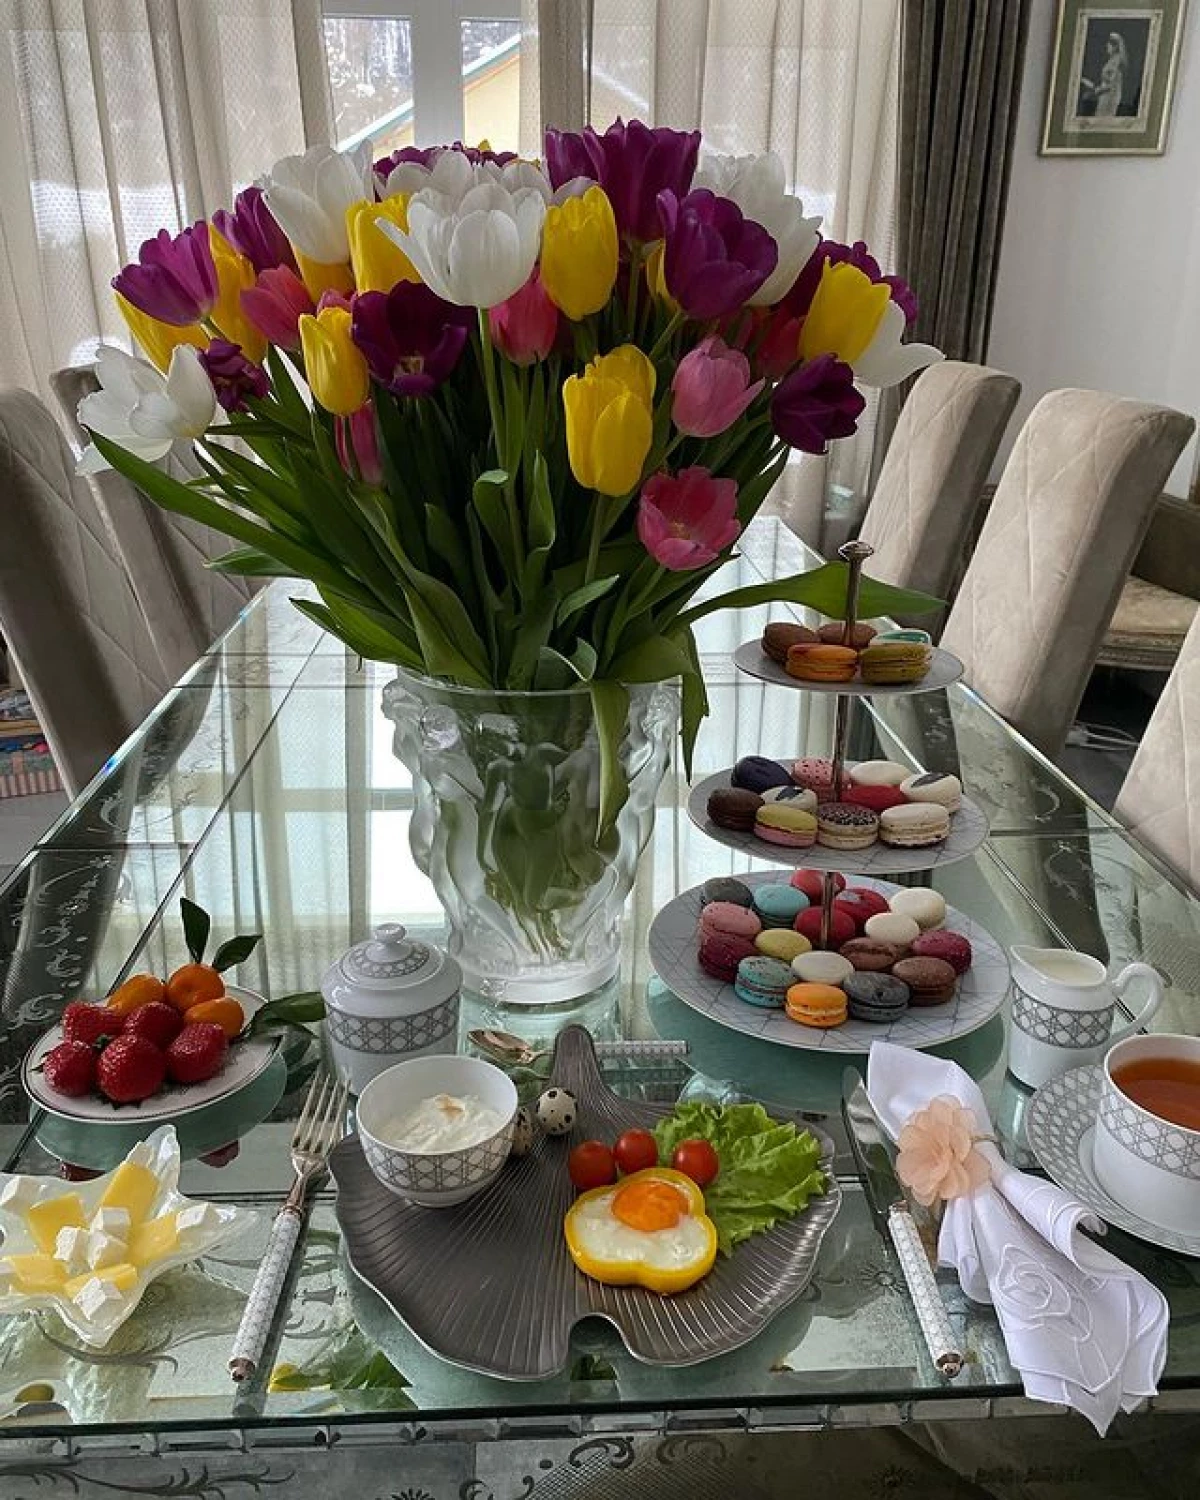 Fenomén ruského Instagramu - Yana Rudkovskaya snídaně na průměrném státním zaměstnanci 5214_2